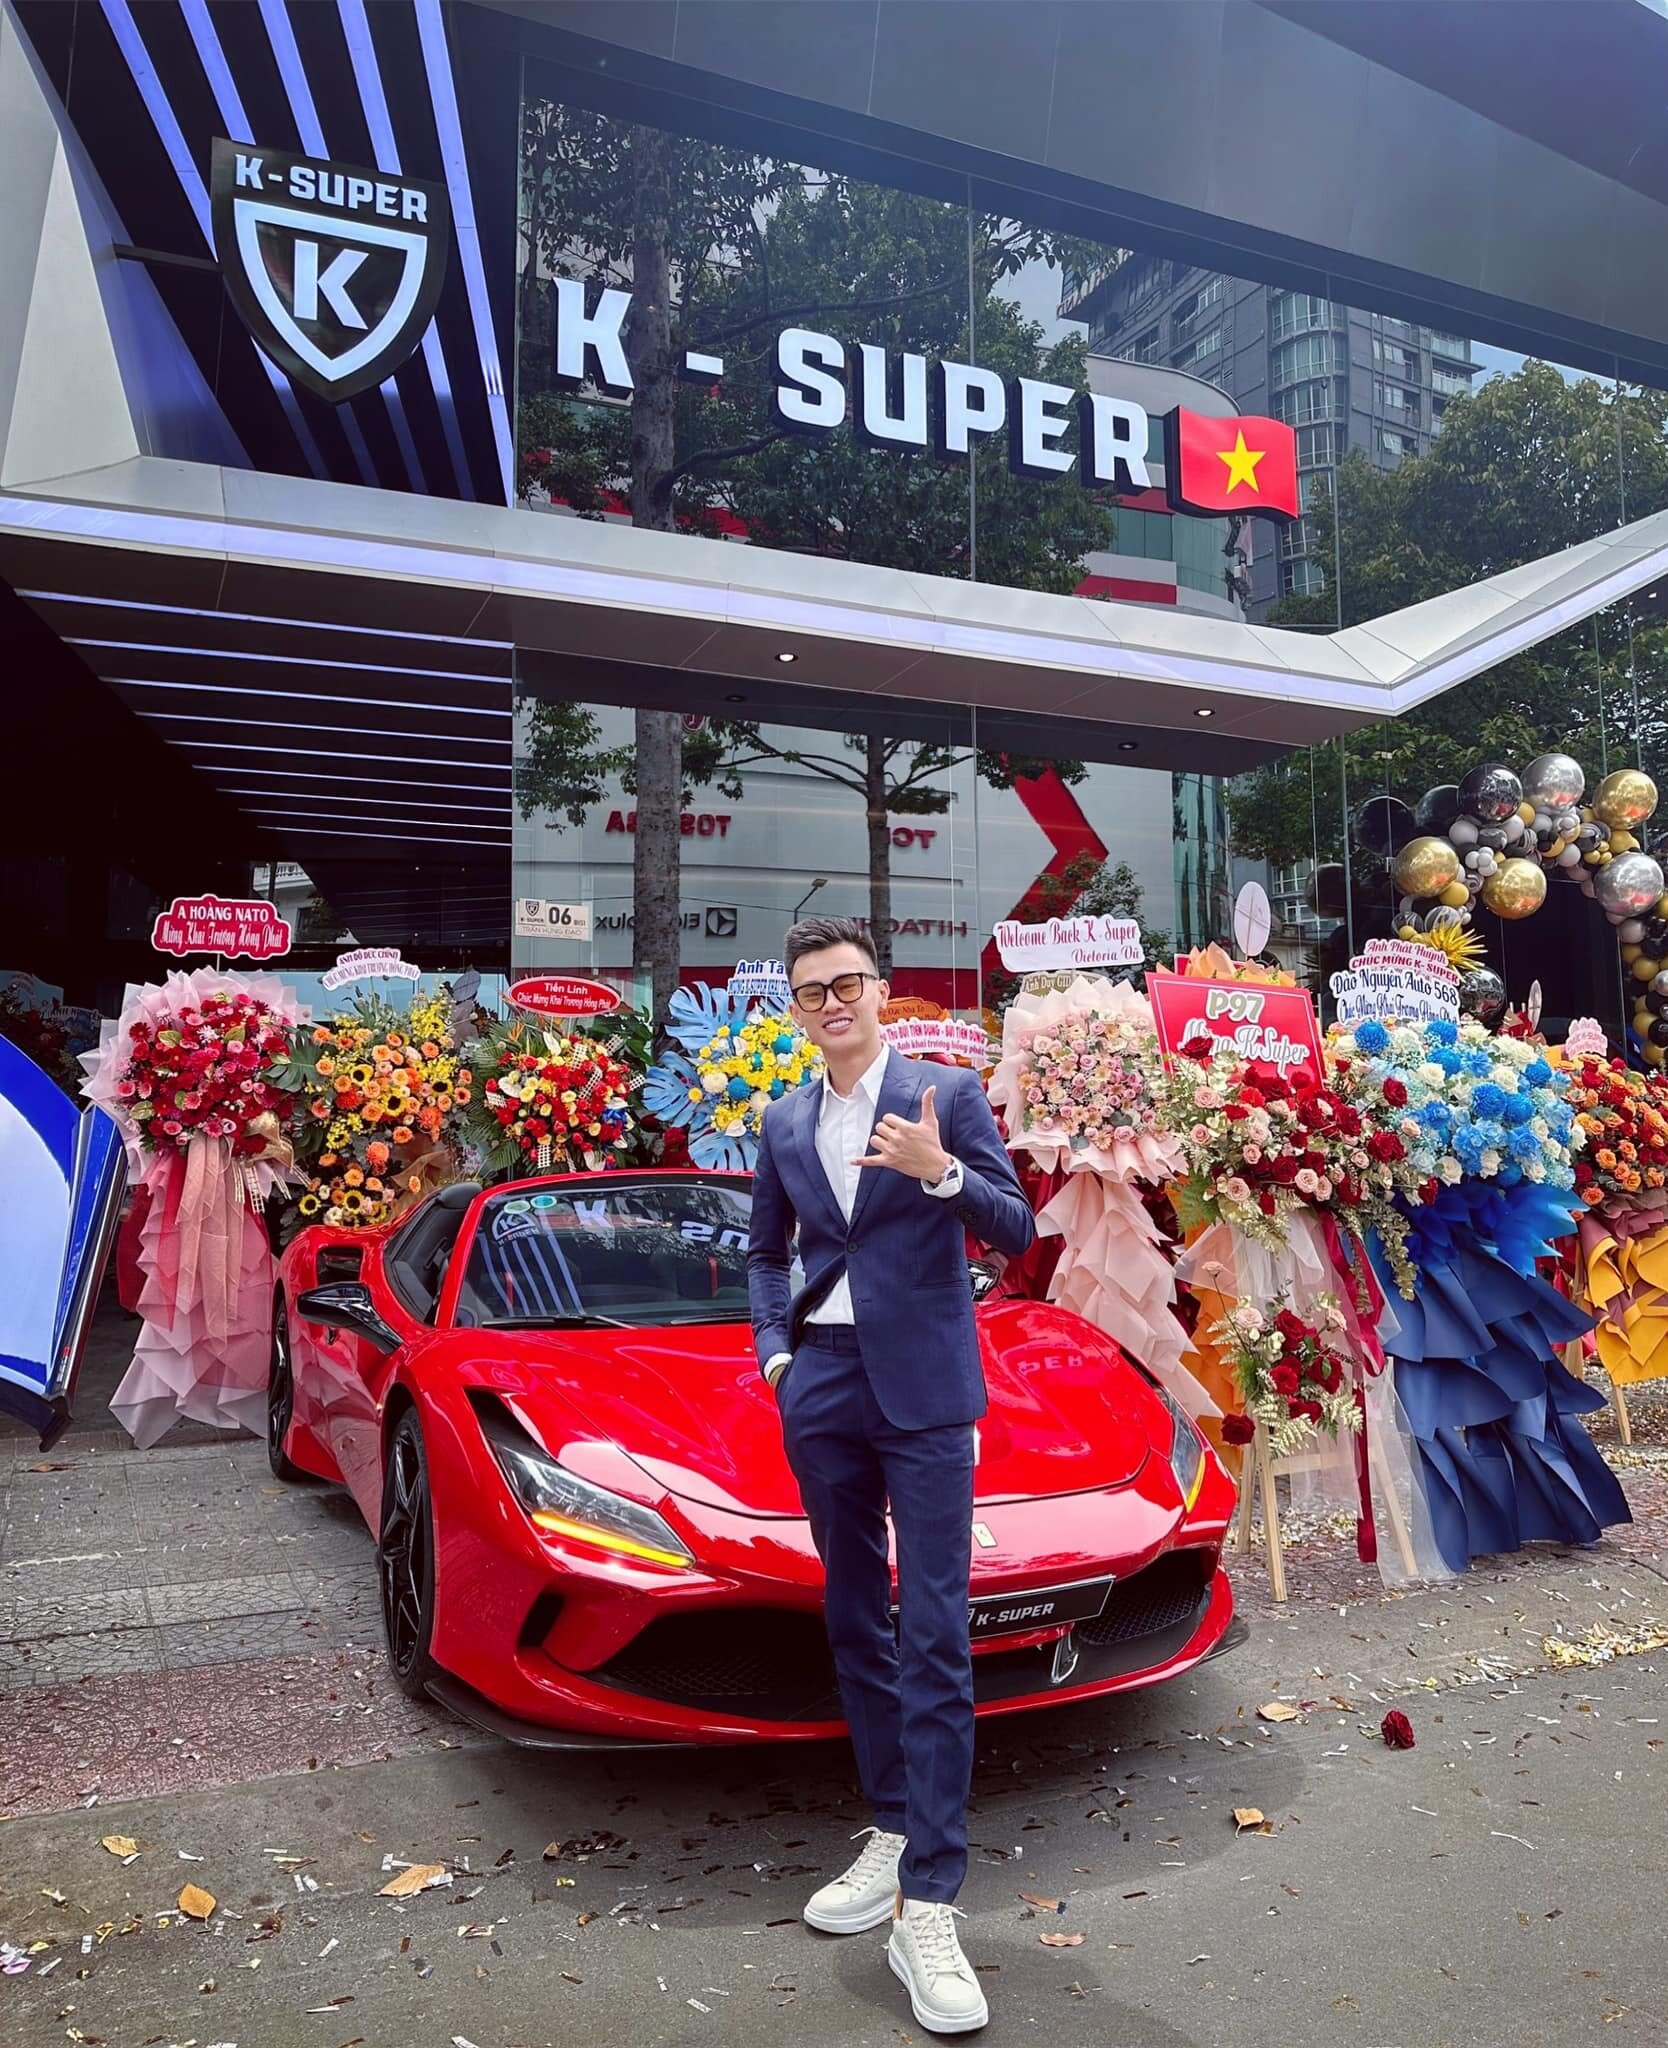 Tháng 6/2023, sự kiện khai trương showroom ô tô tên Khanh - Super quy tụ nhiều người nổi tiếng đến tham dự. (Ảnh: FB nhân vật)